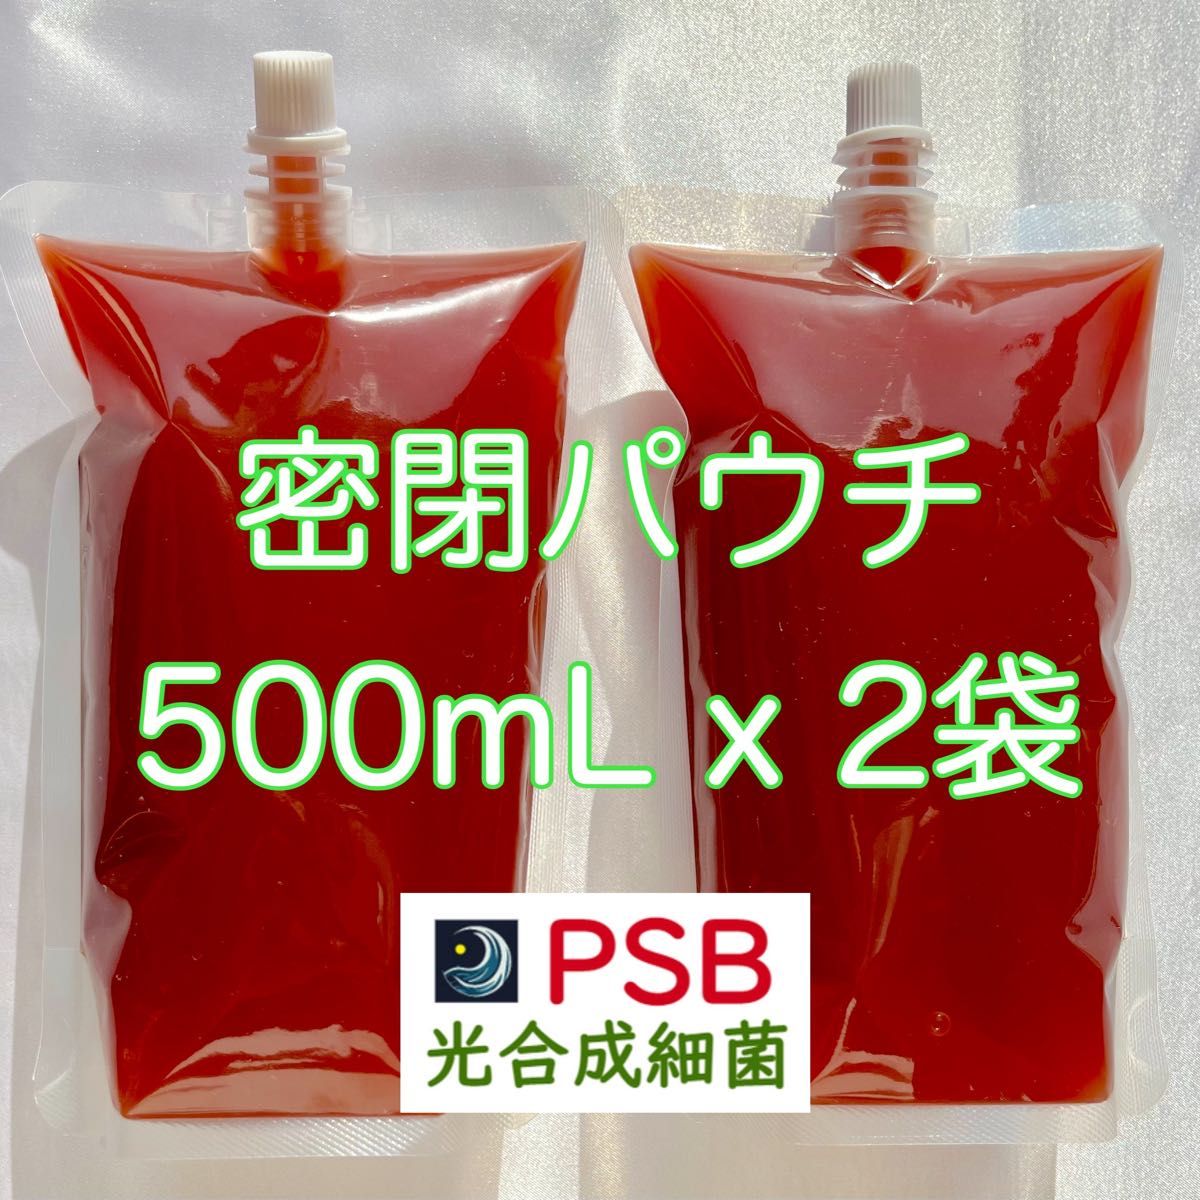 【PSB】光合成細菌 1L(500mL x 2袋) 肥料